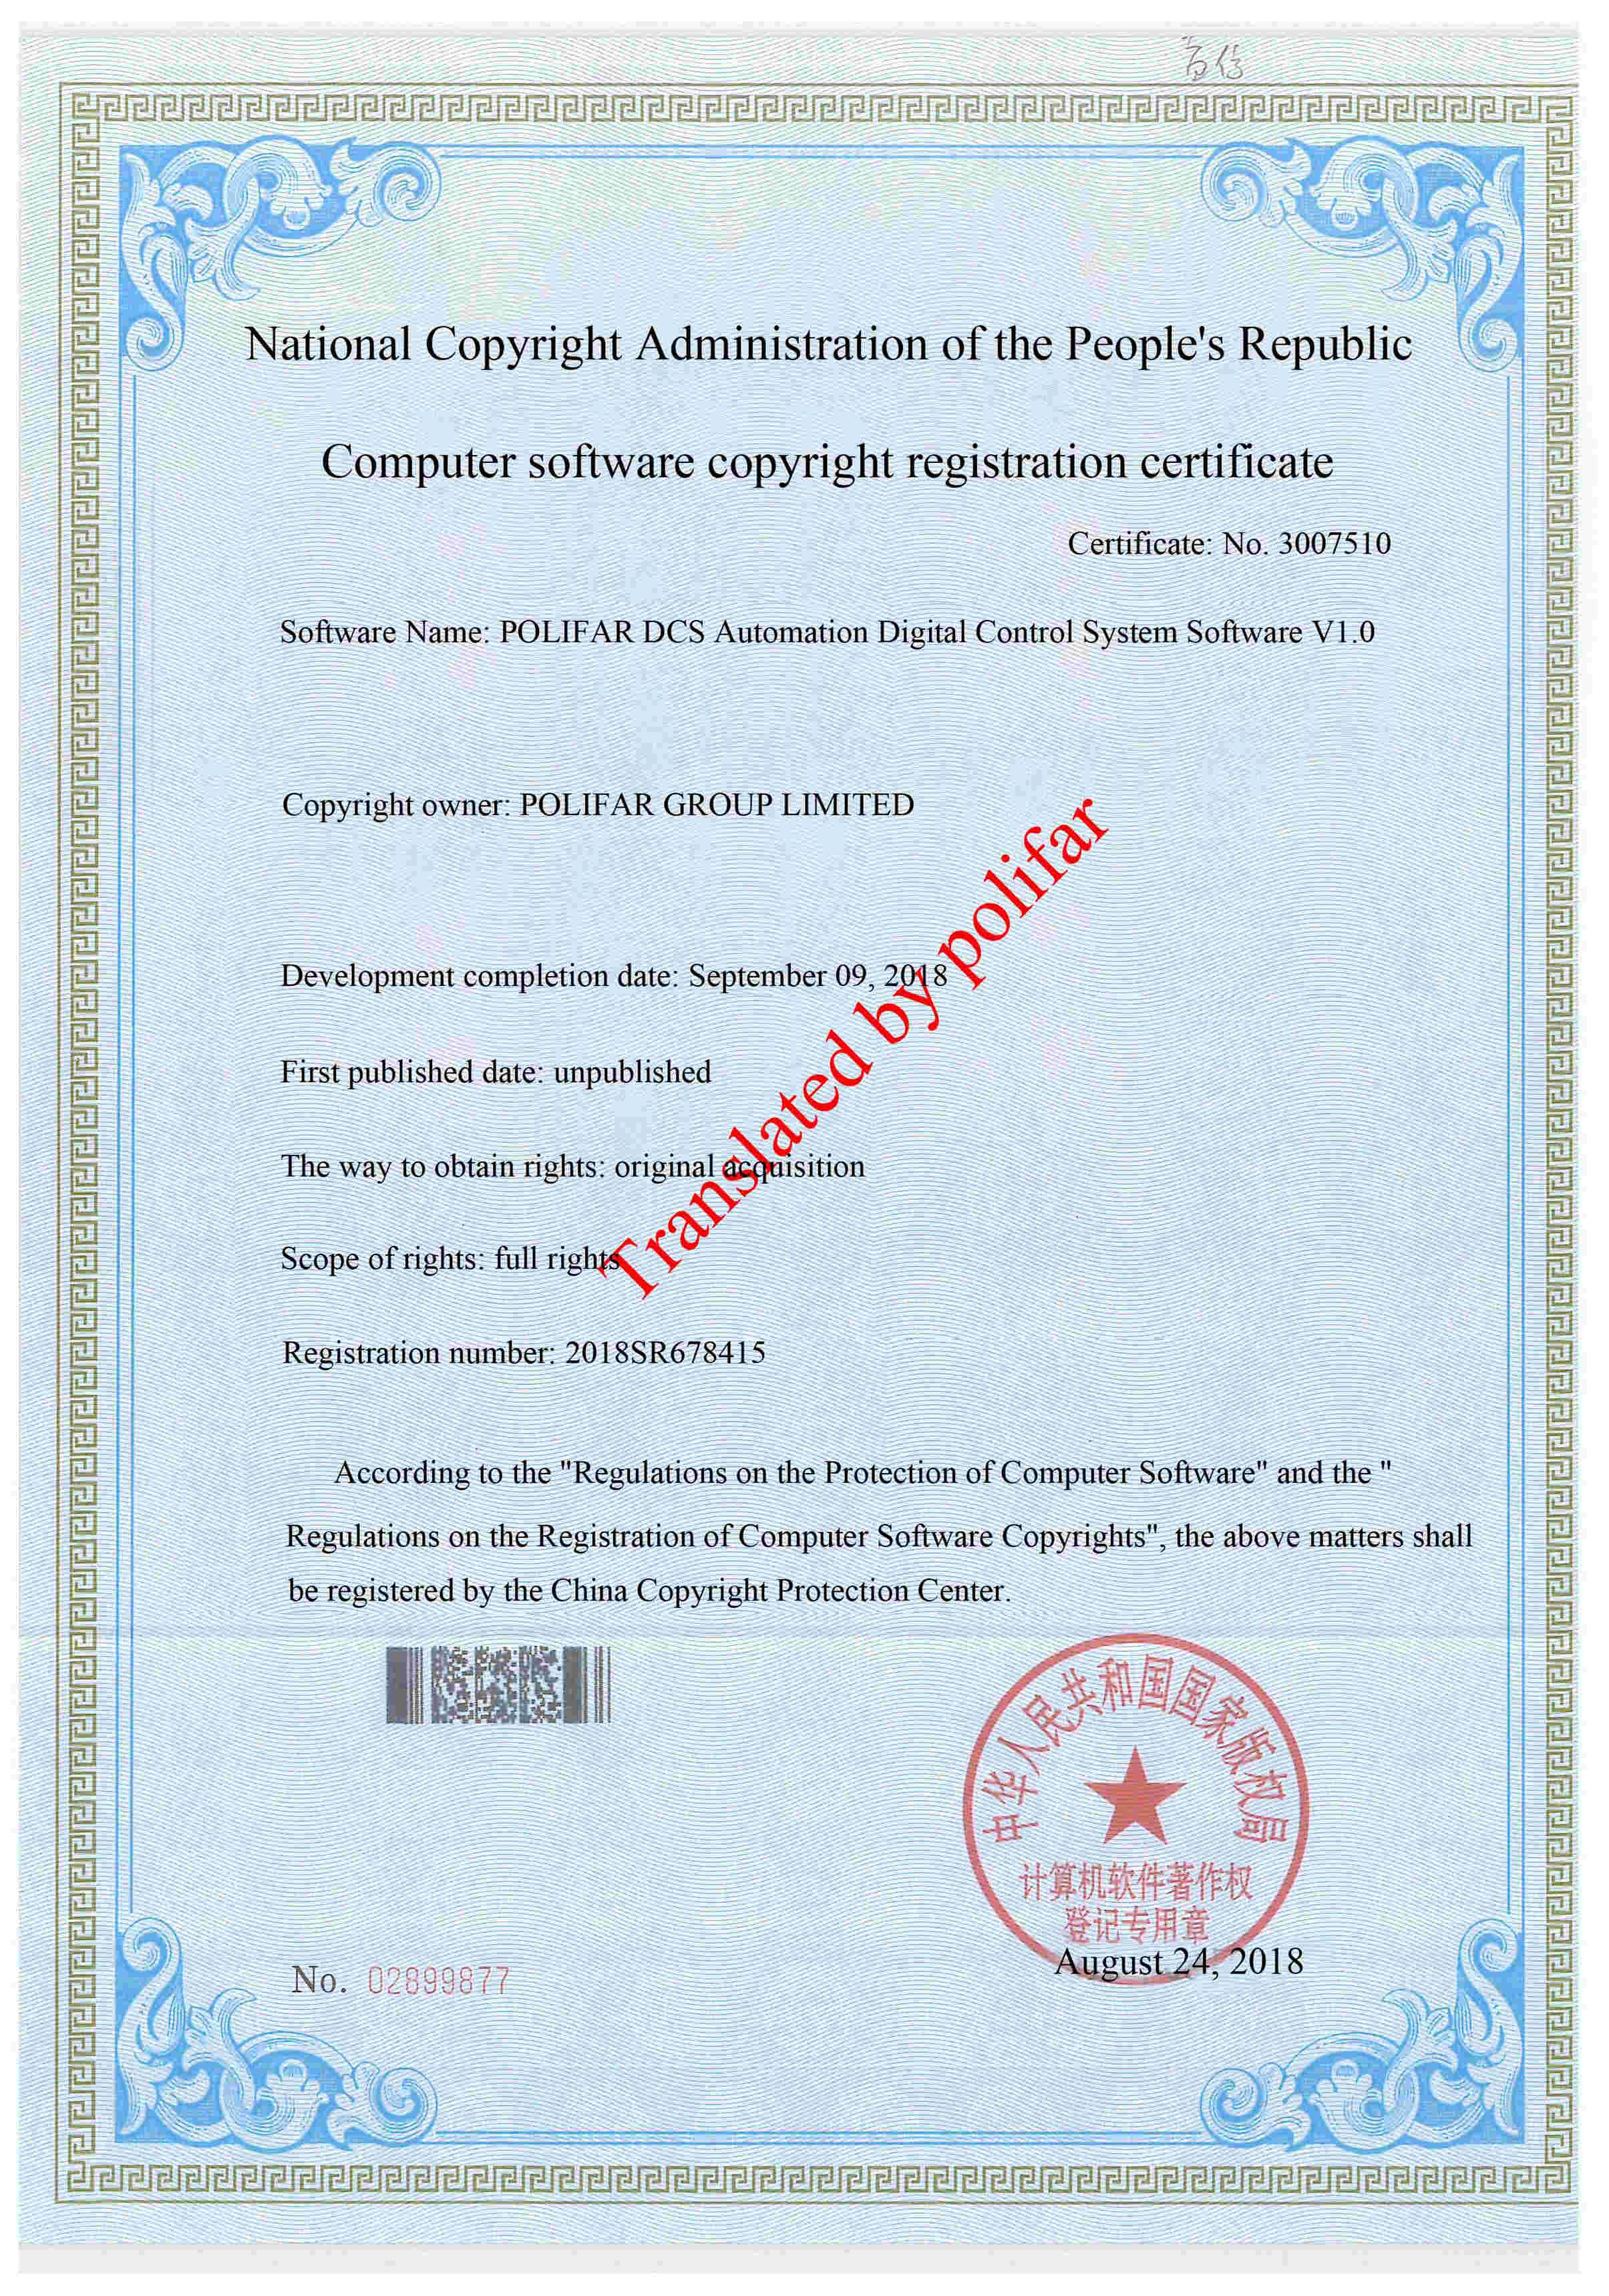 Digital Control System Software POLIFAR DCS Automation V1.0